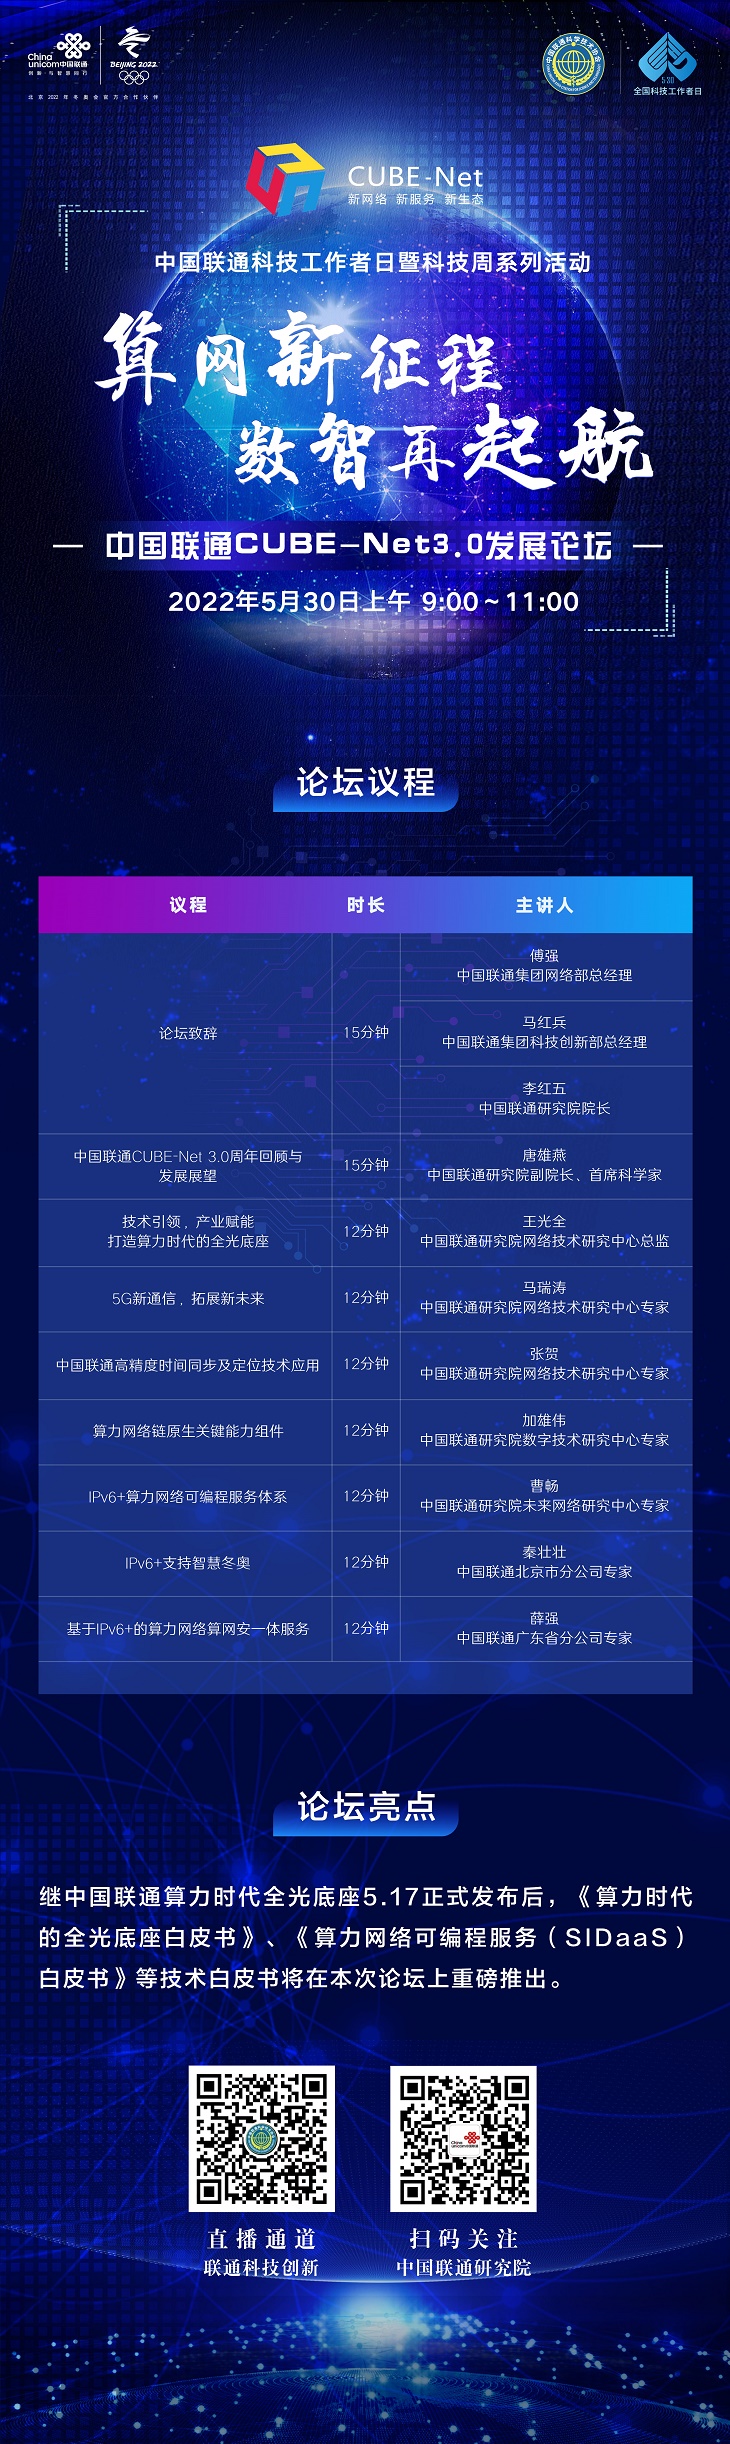 “算网新征程，数智再起航” 中国联通CUBE-Net3.0网络创新成果即将重磅发布